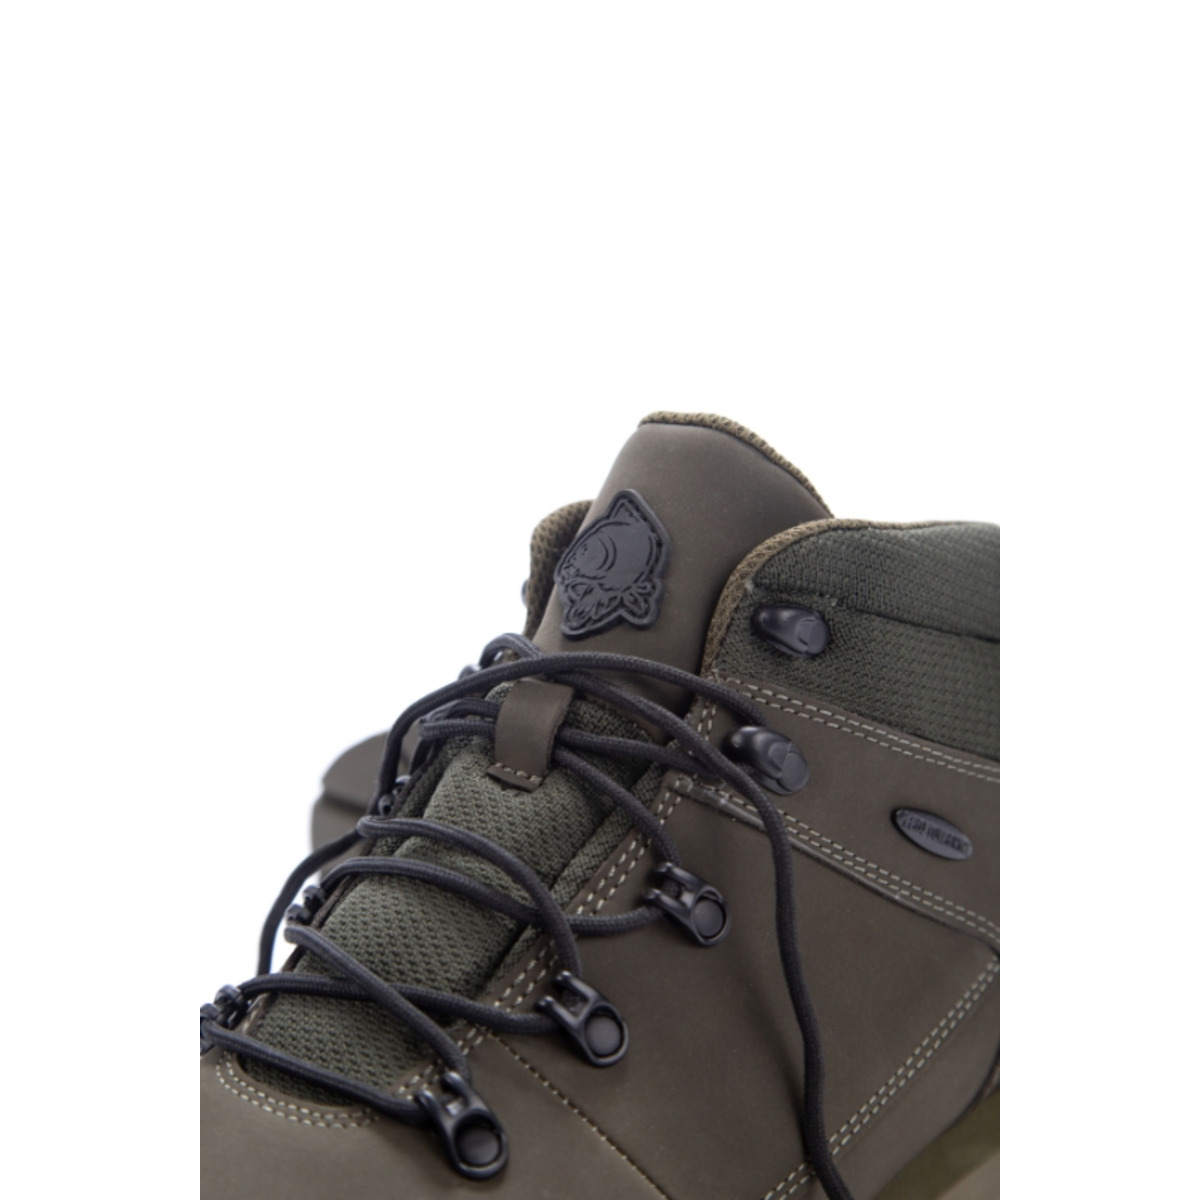 Nash Zt Trail Boots - Size 8 (42)